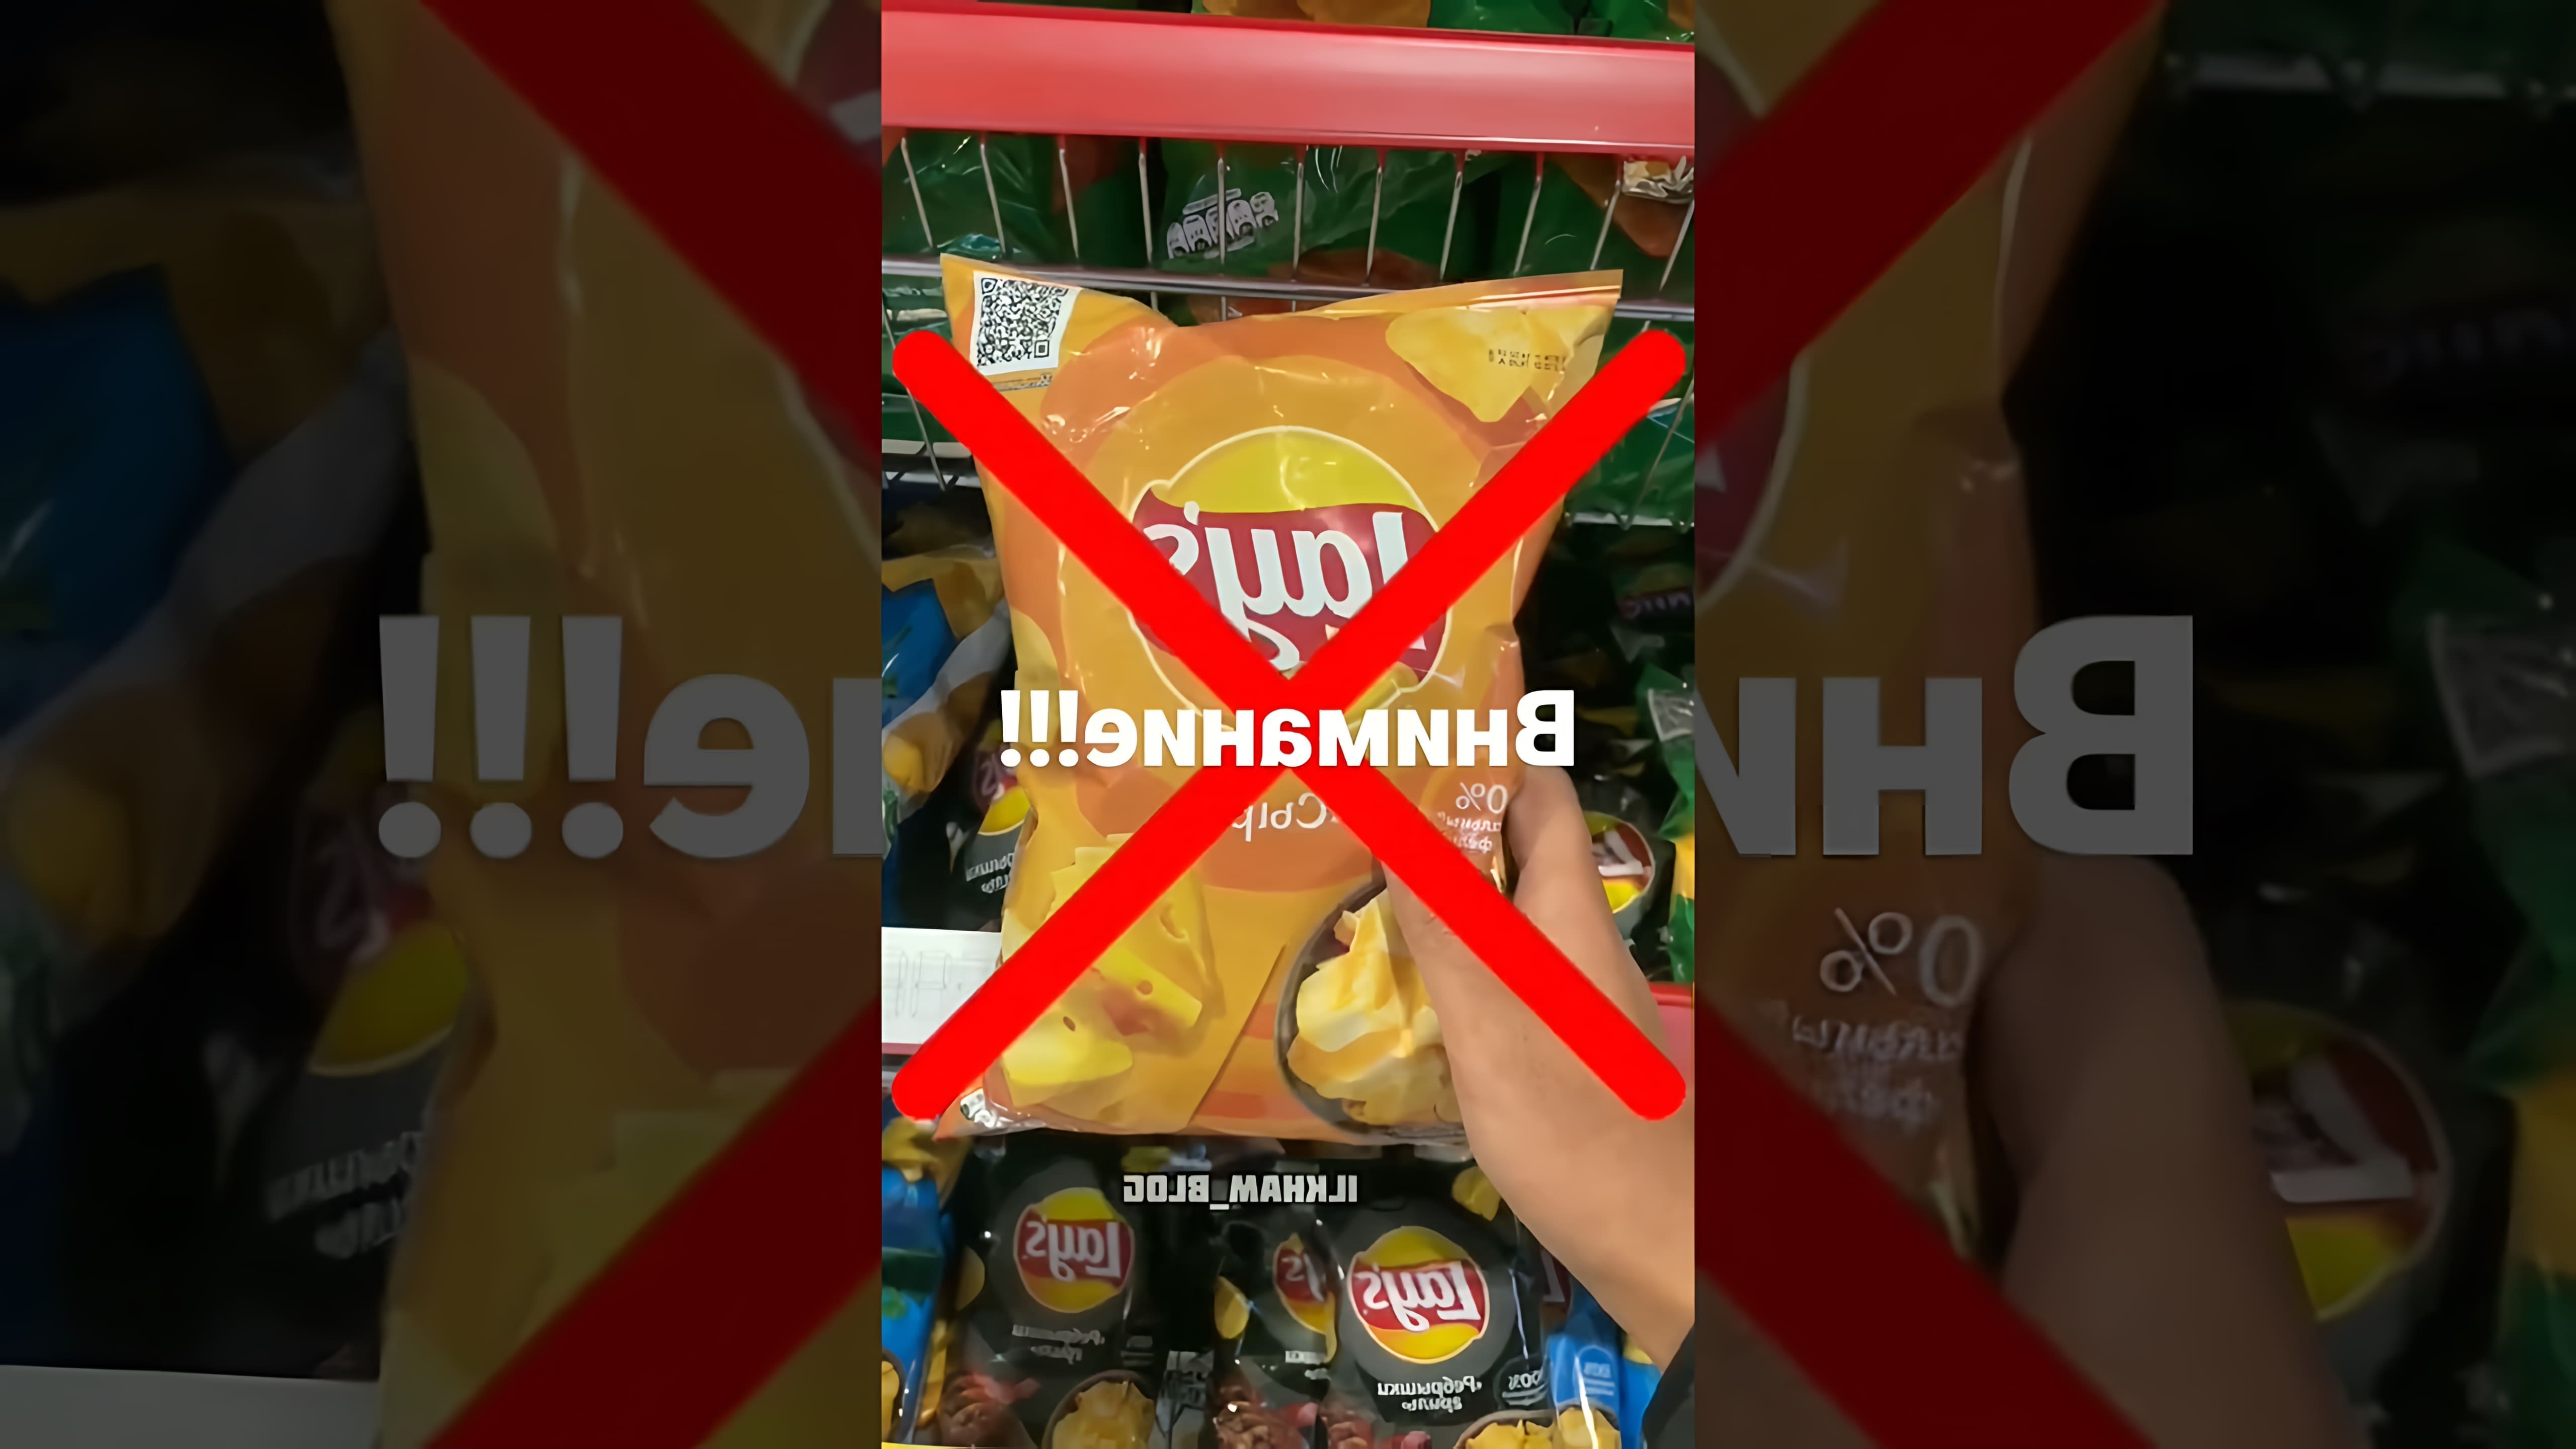 "Не покупайте эти чипсы" - это видео-ролик, который предупреждает о вреде употребления чипсов